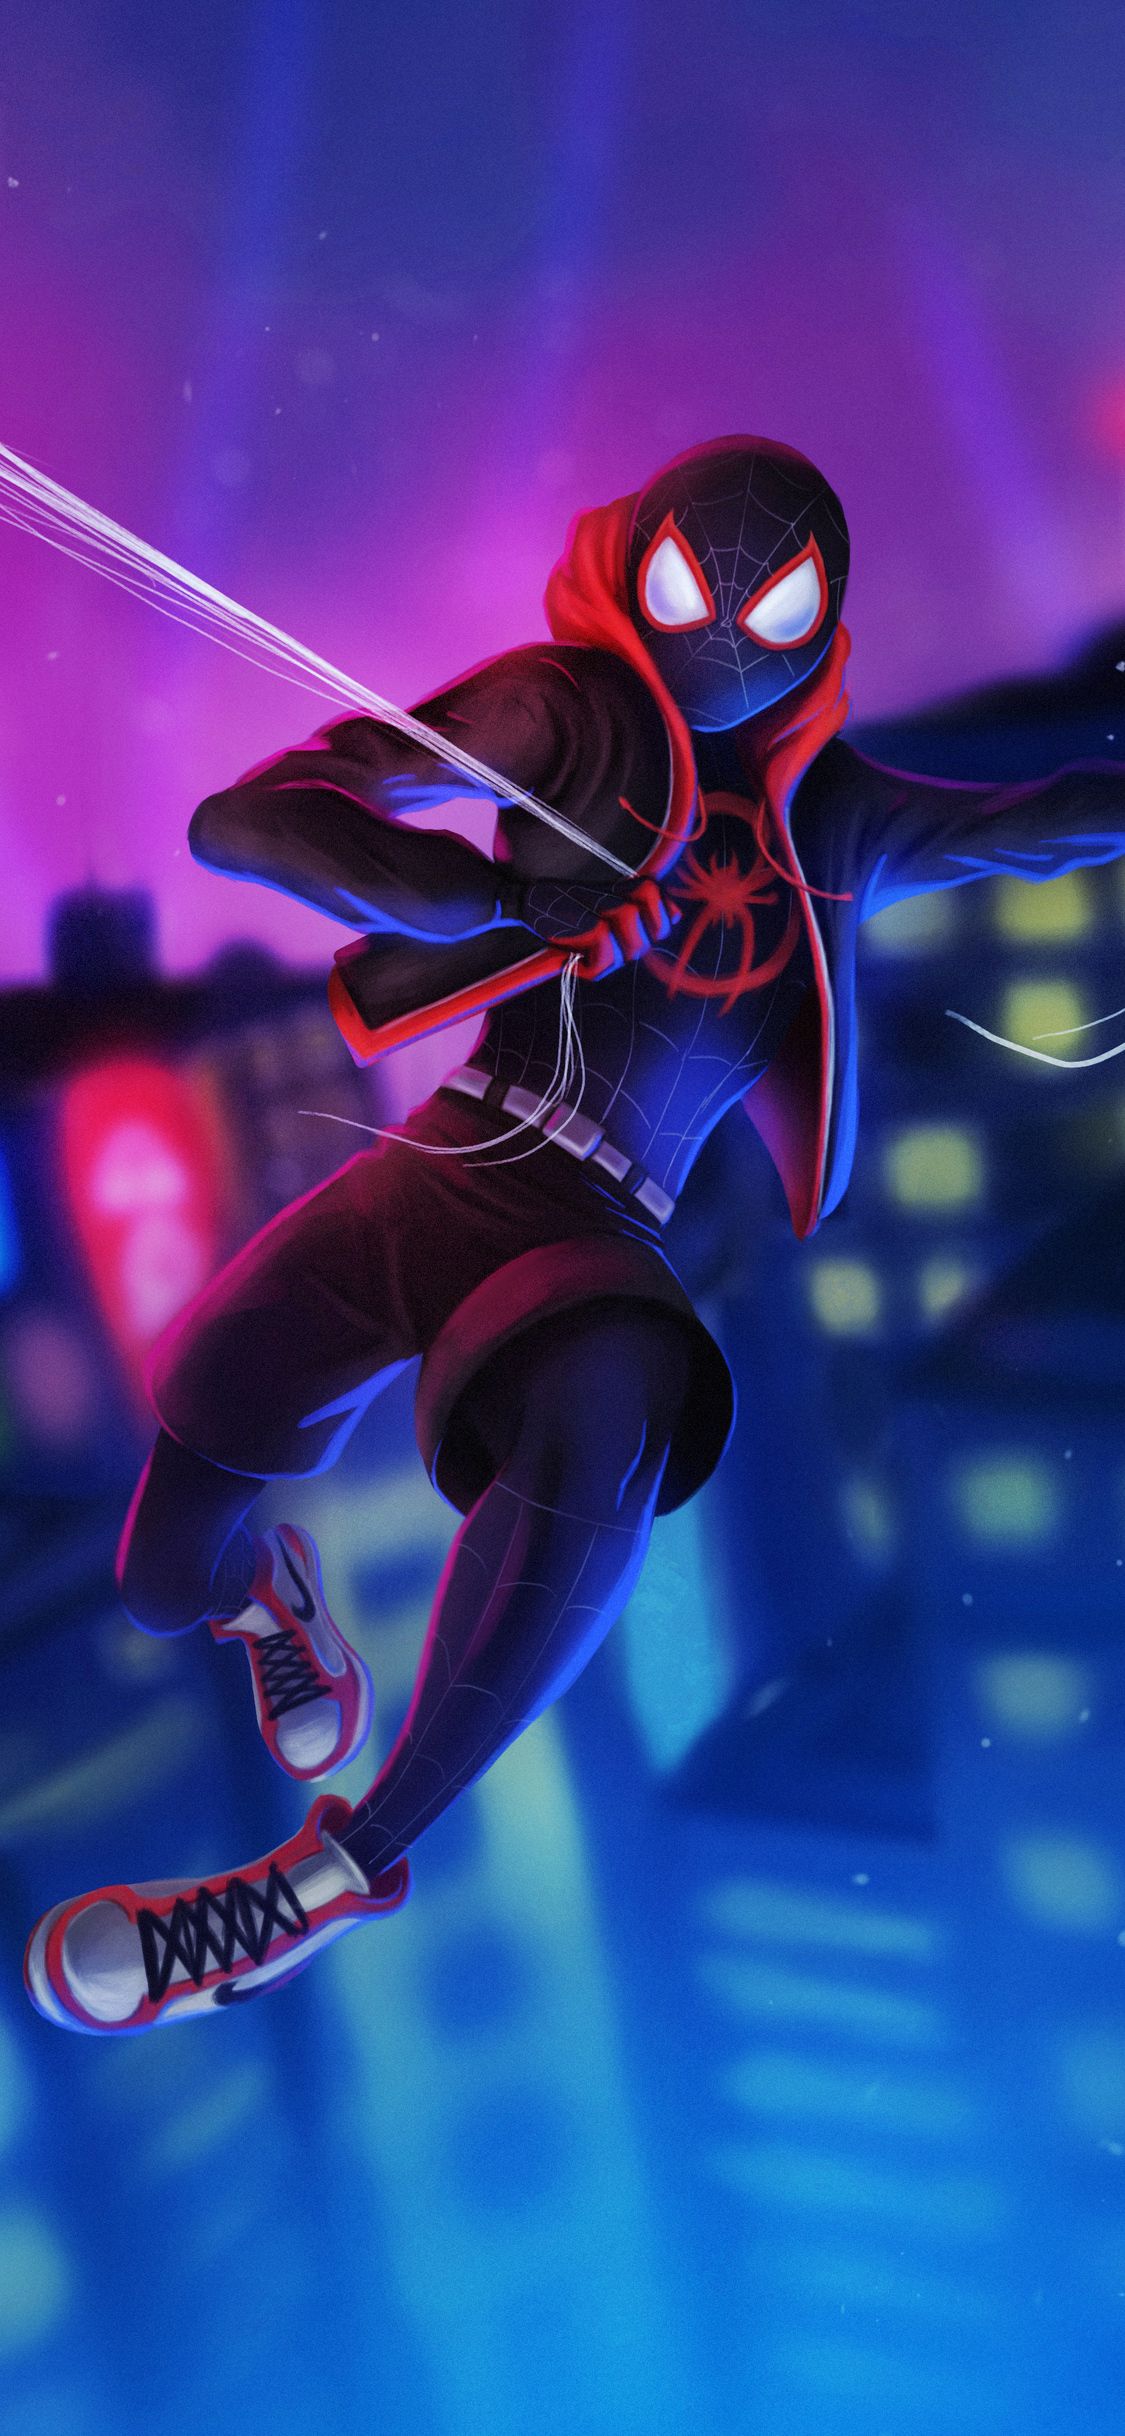 Spiderman 4k iPhone Wallpaper .teahub.io